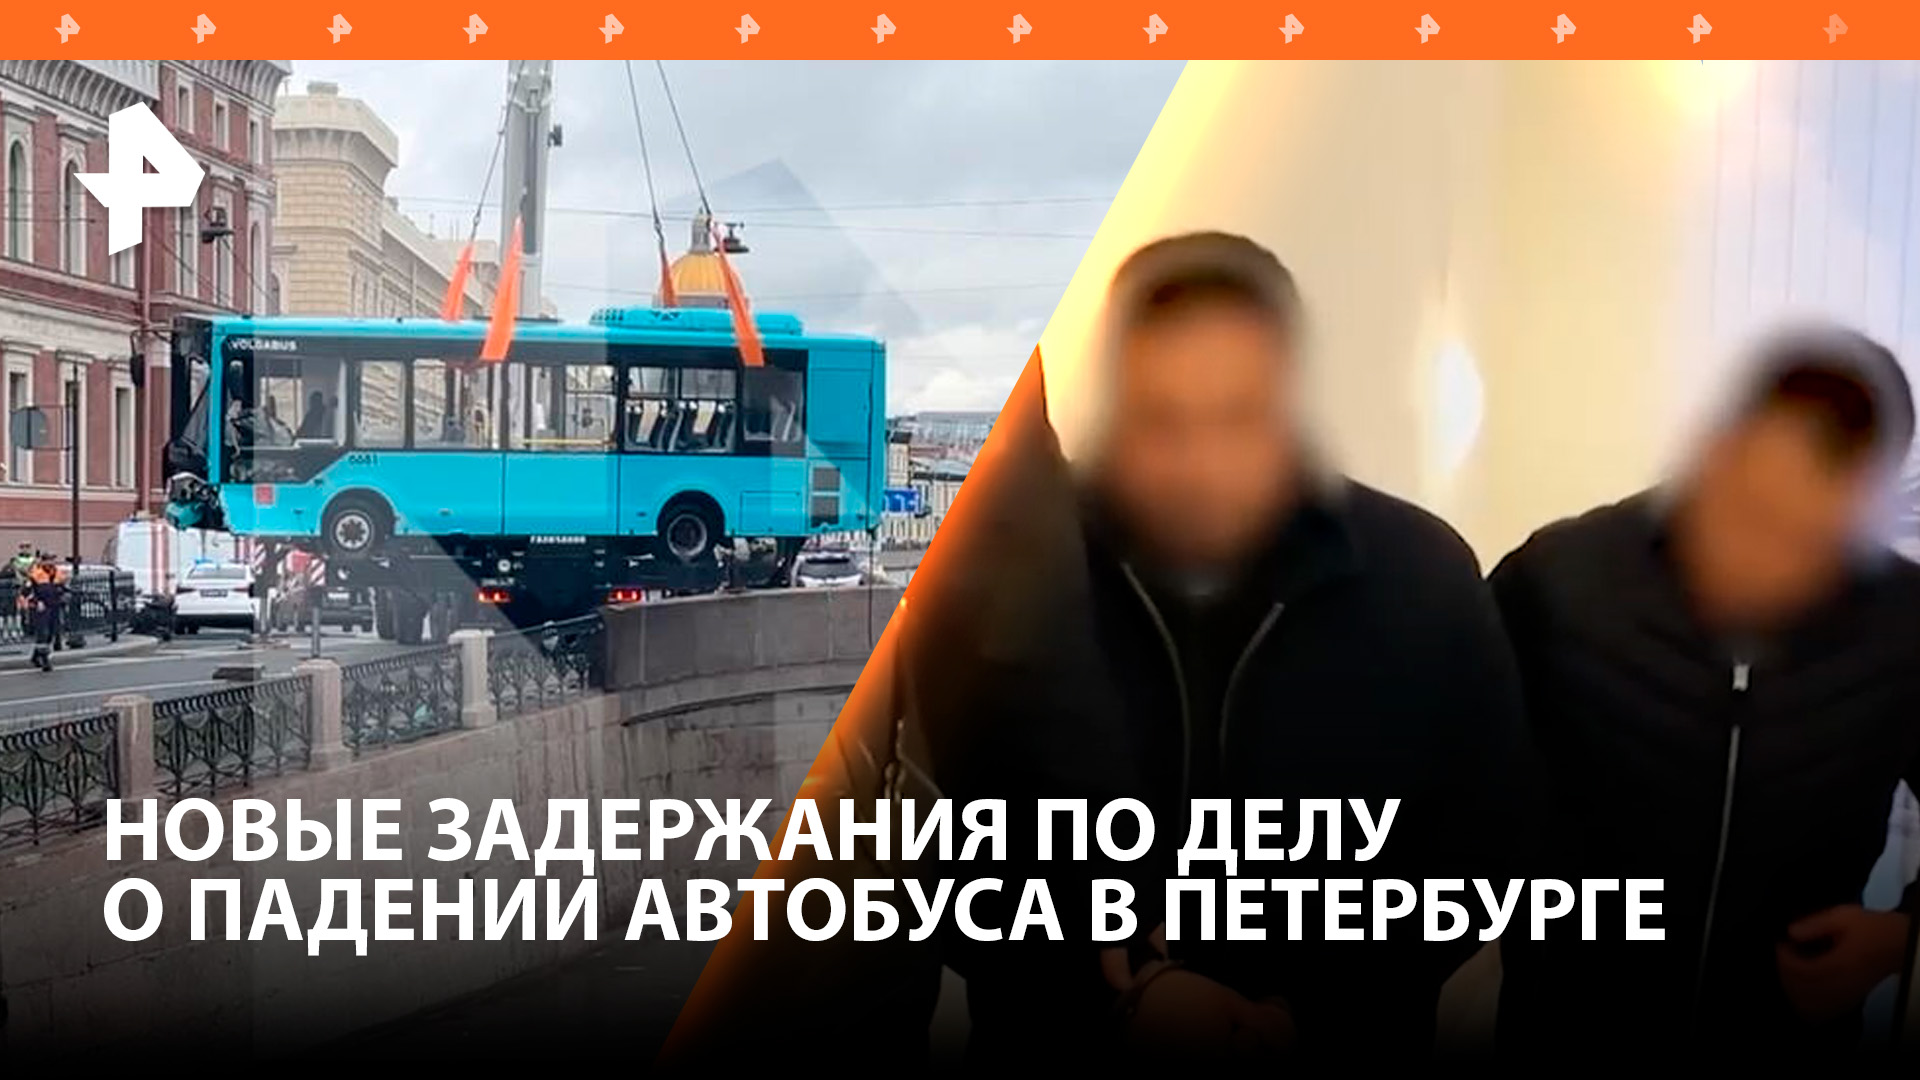 Начальник автоколонны задержан по делу о падении автобуса в Мойку / РЕН Новости